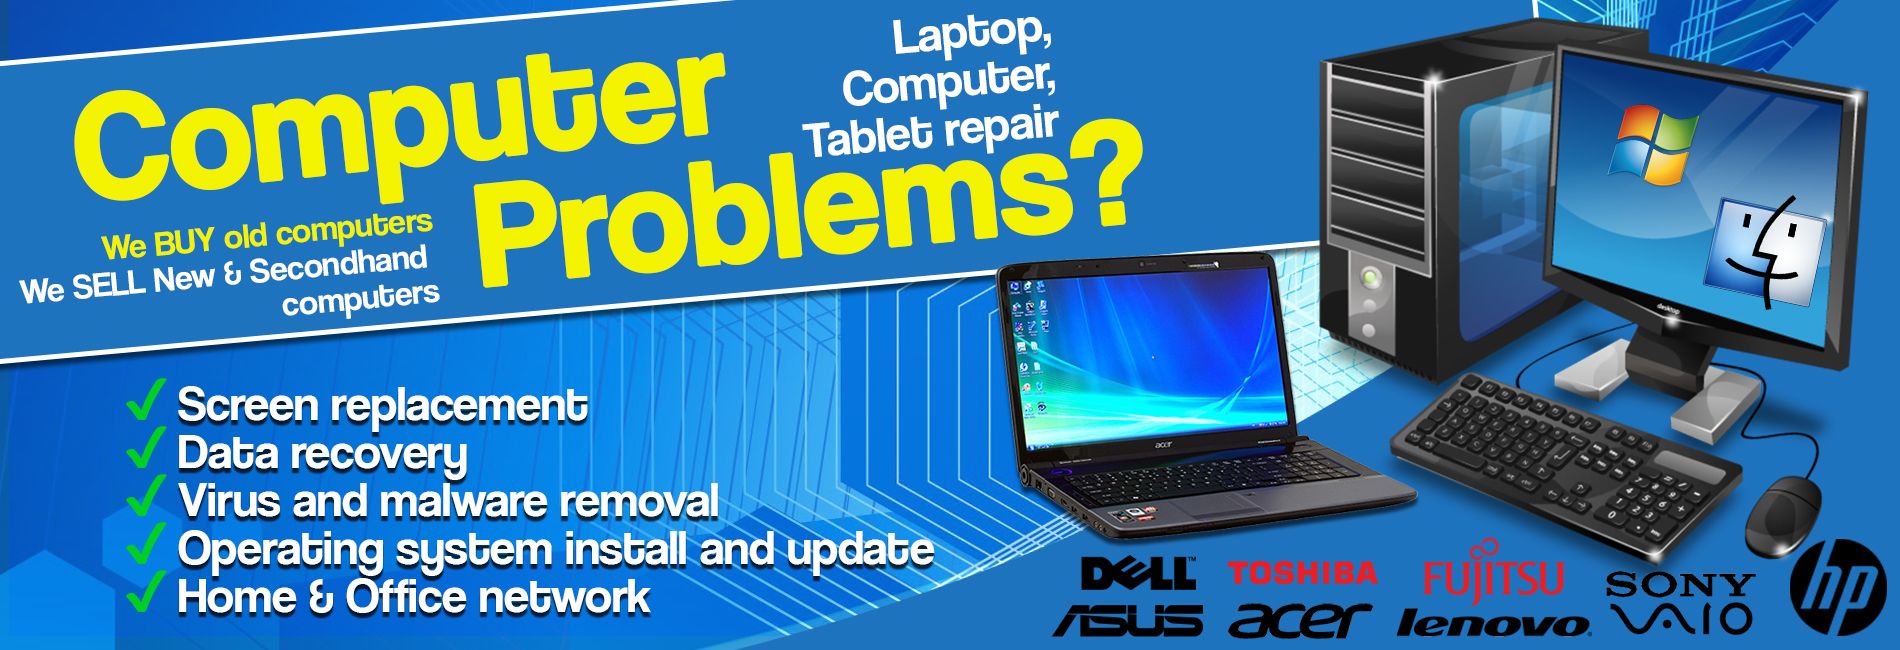 Laptop Repair in Gurgaon Near Me – 7836068930 - Bhumi Computer and Laptop  Repair